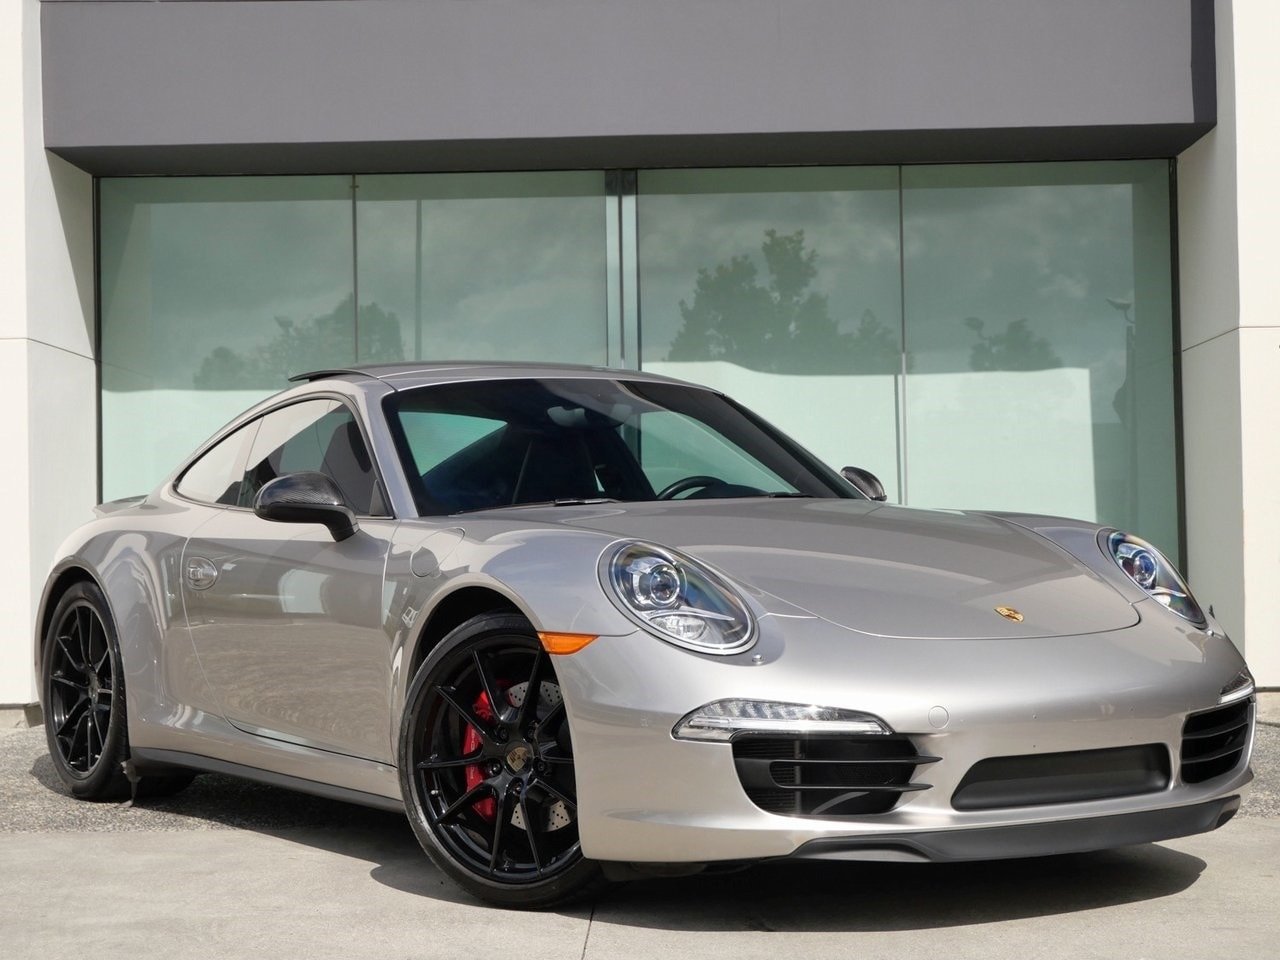 2013 Porsche 911 Carrera 4S For Sale